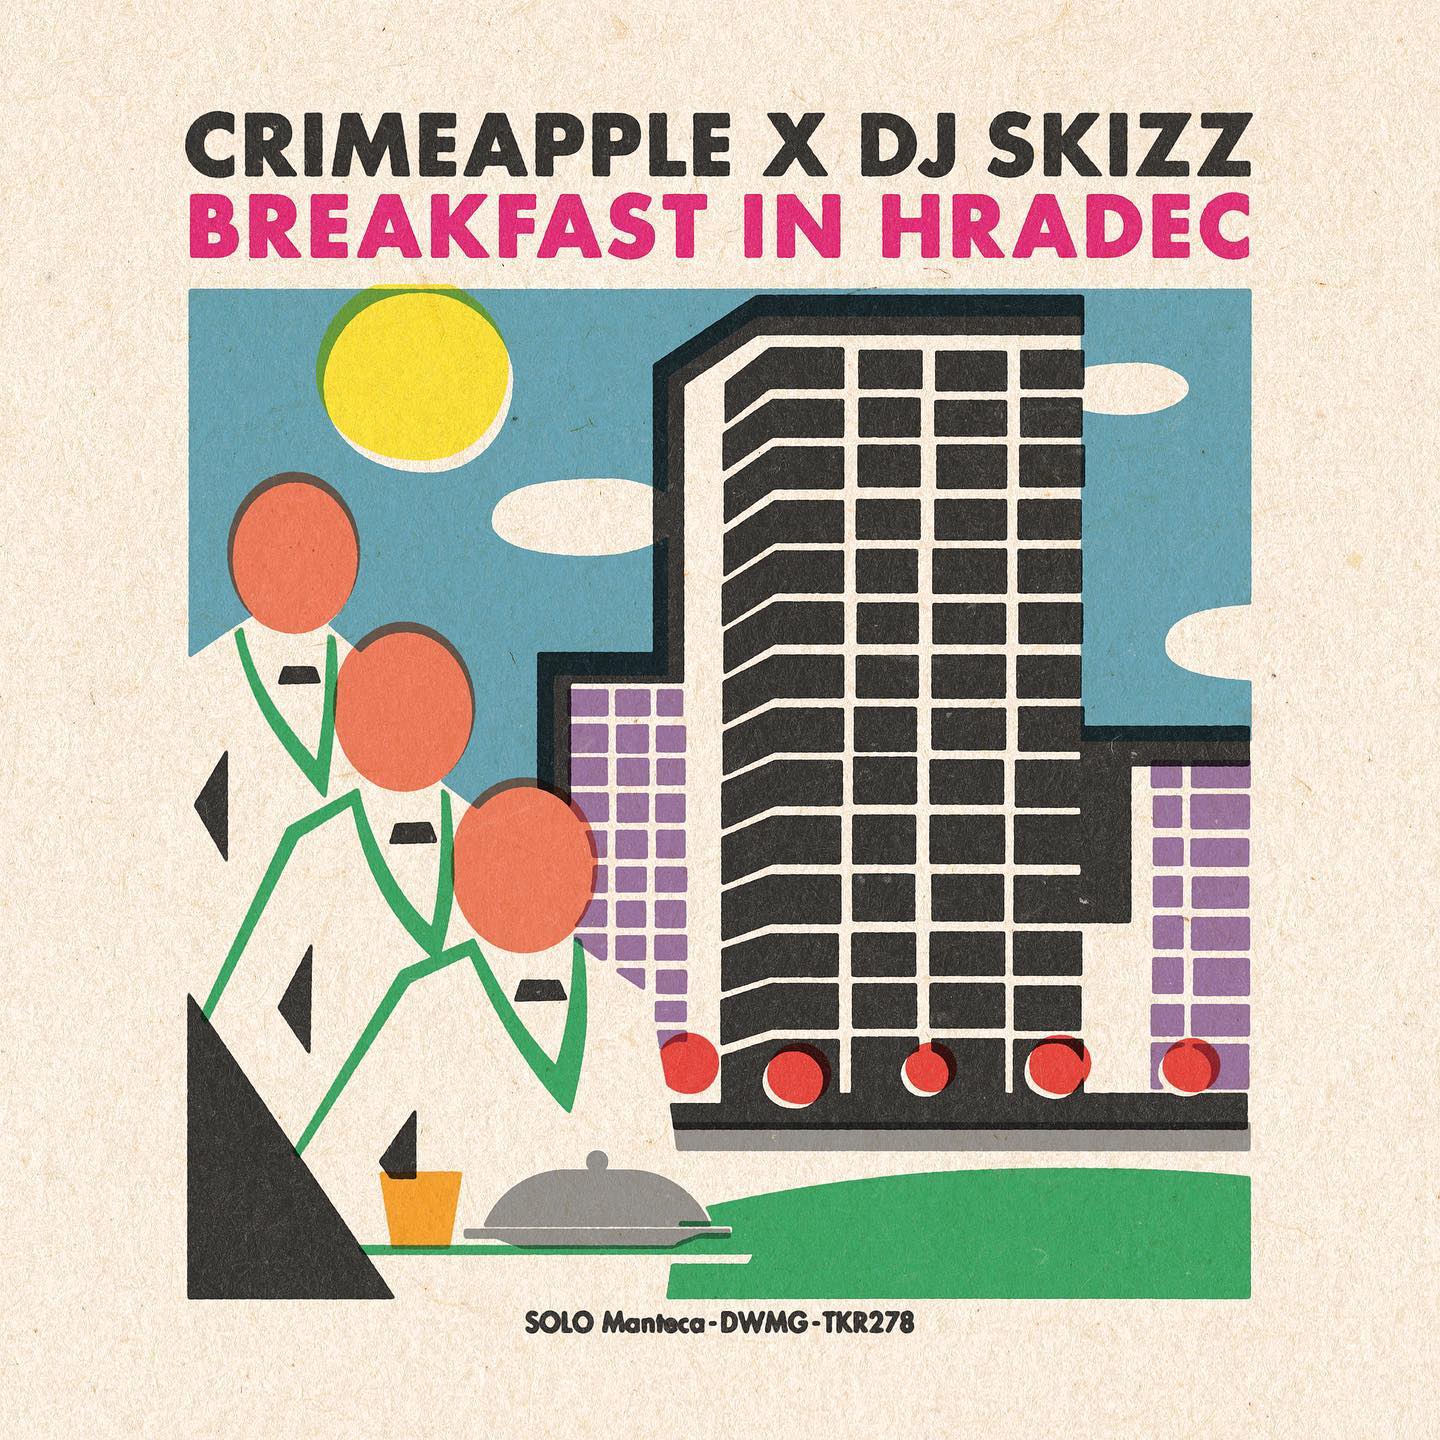 Breakfast_in_hradec_crimeapple_dj_skizz